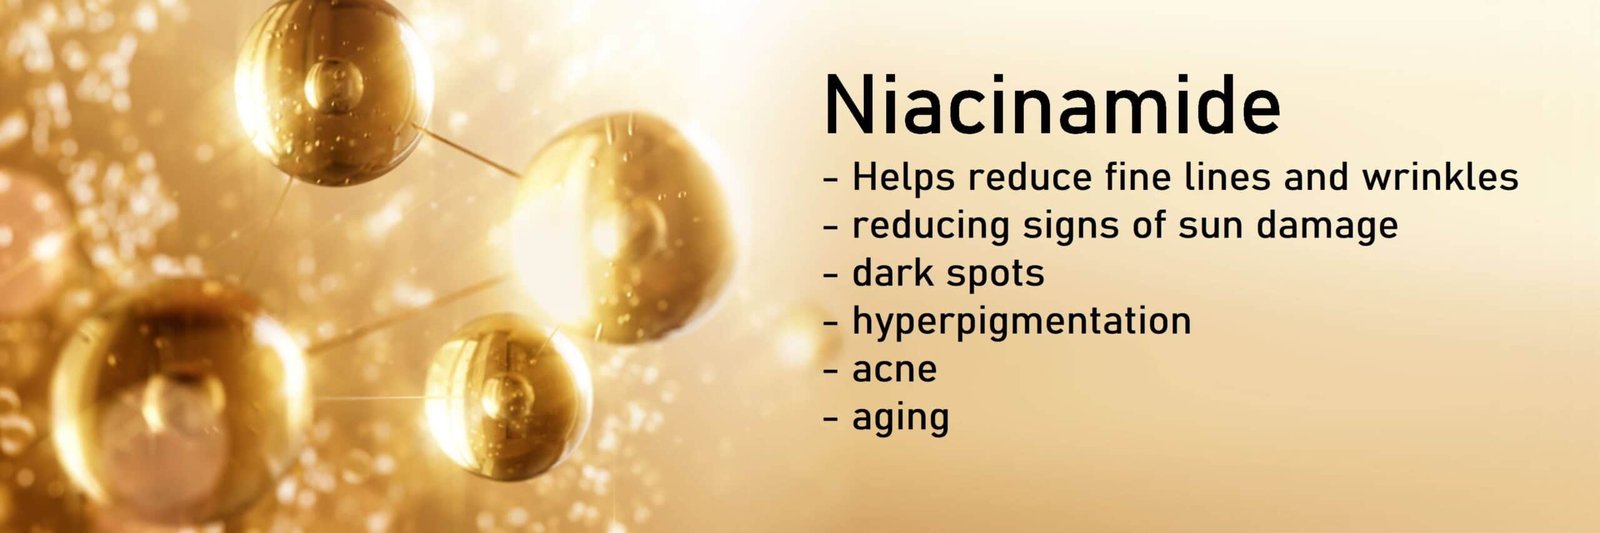 niacinamide benefits